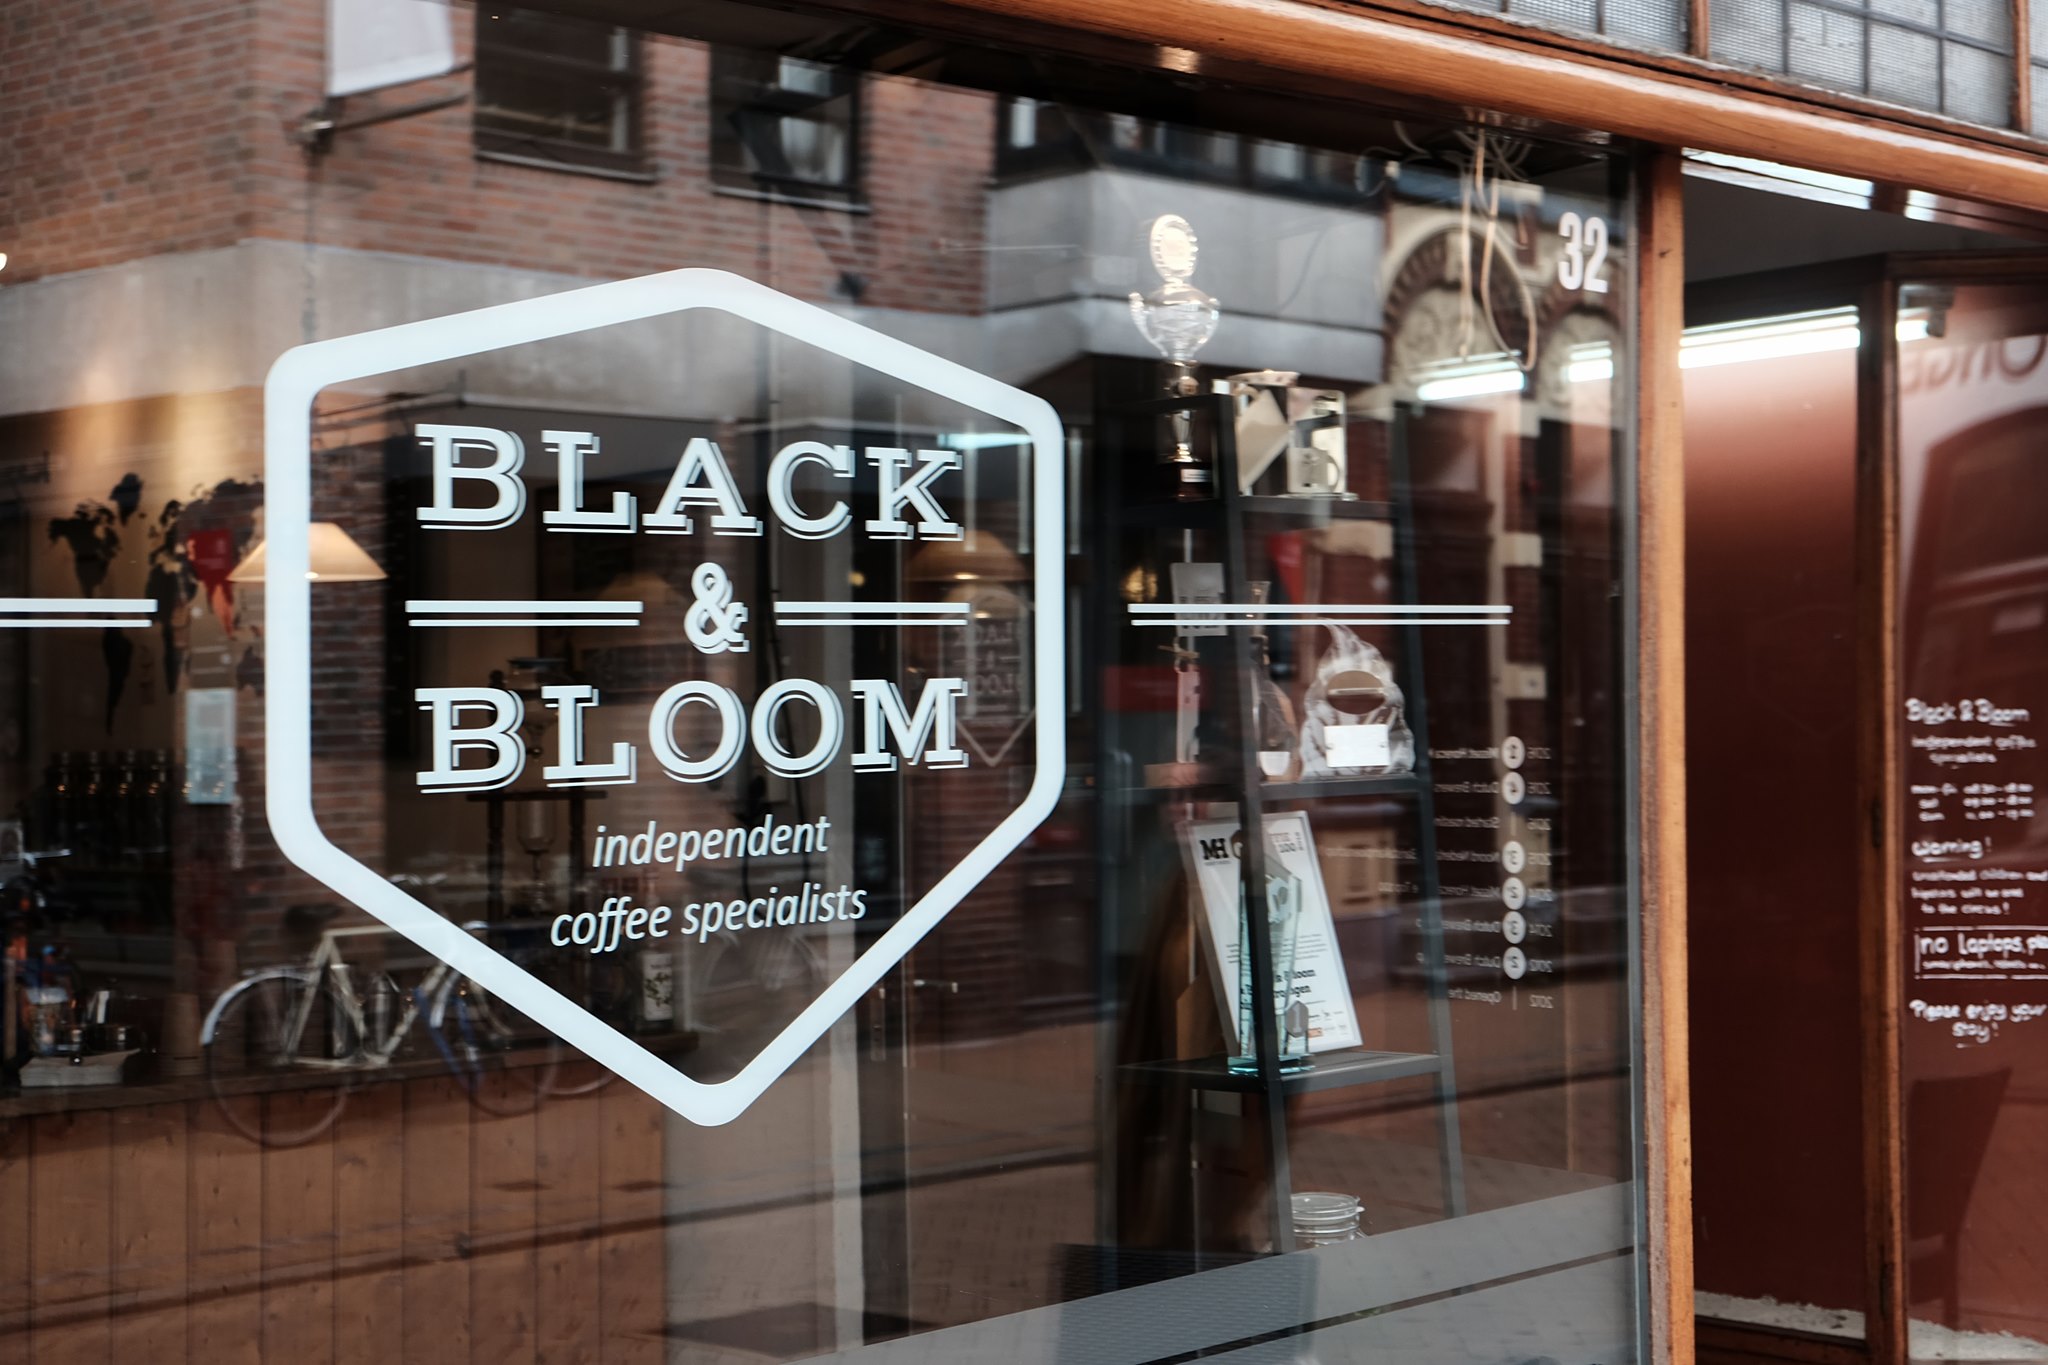 Black & Bloom espresso bar photo via Facebook